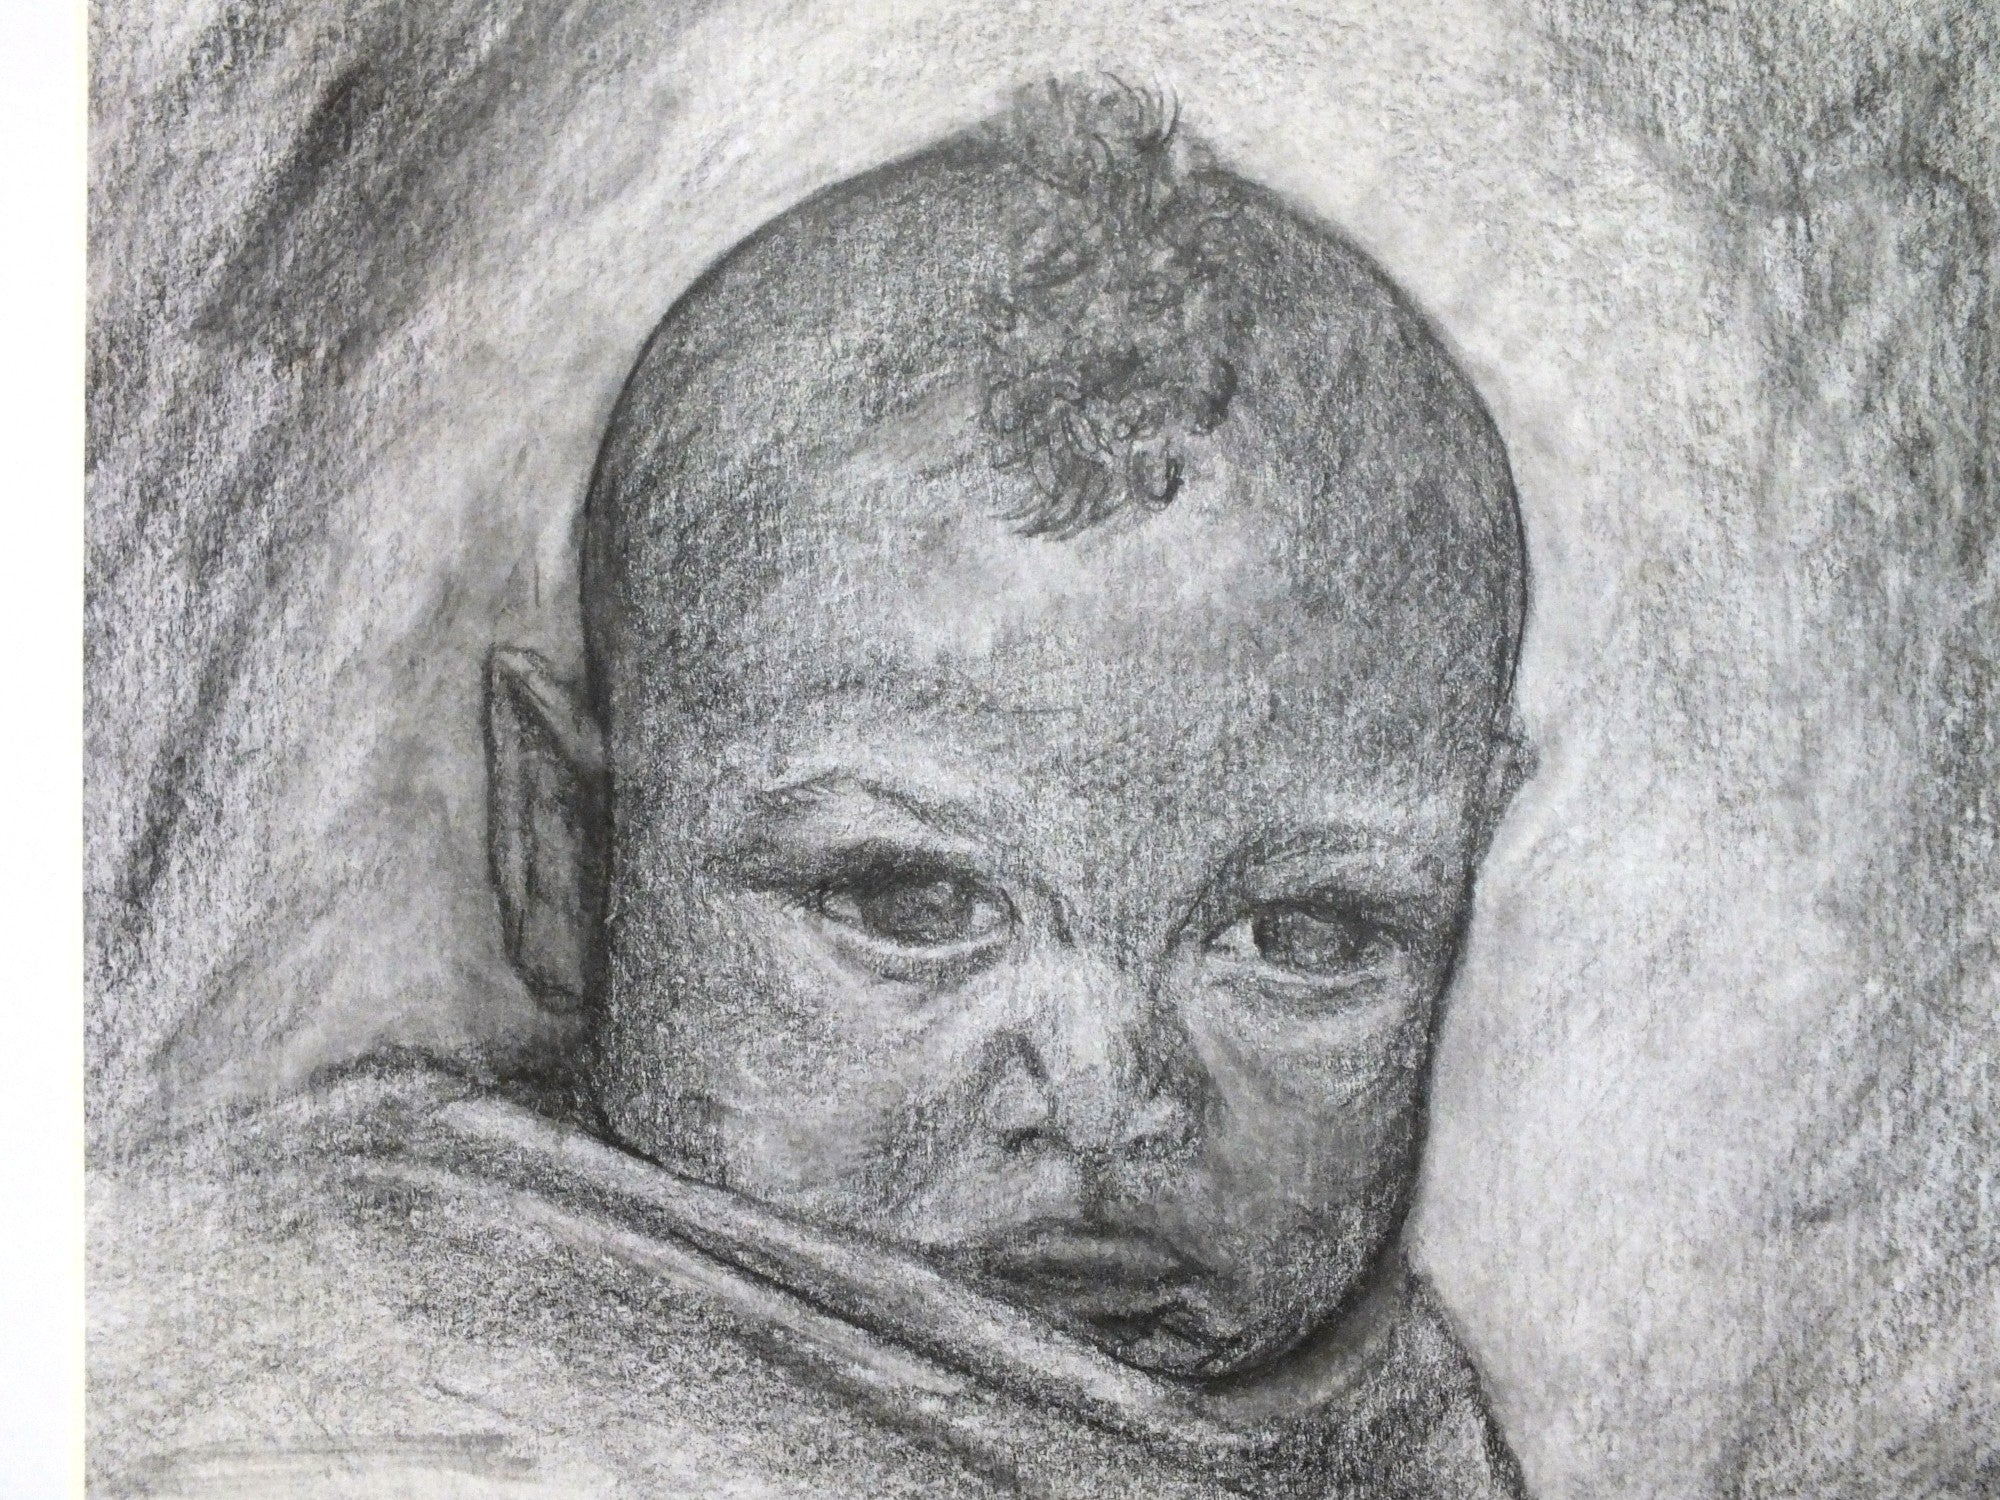 Baby Portrait, Original Illustration, Framed